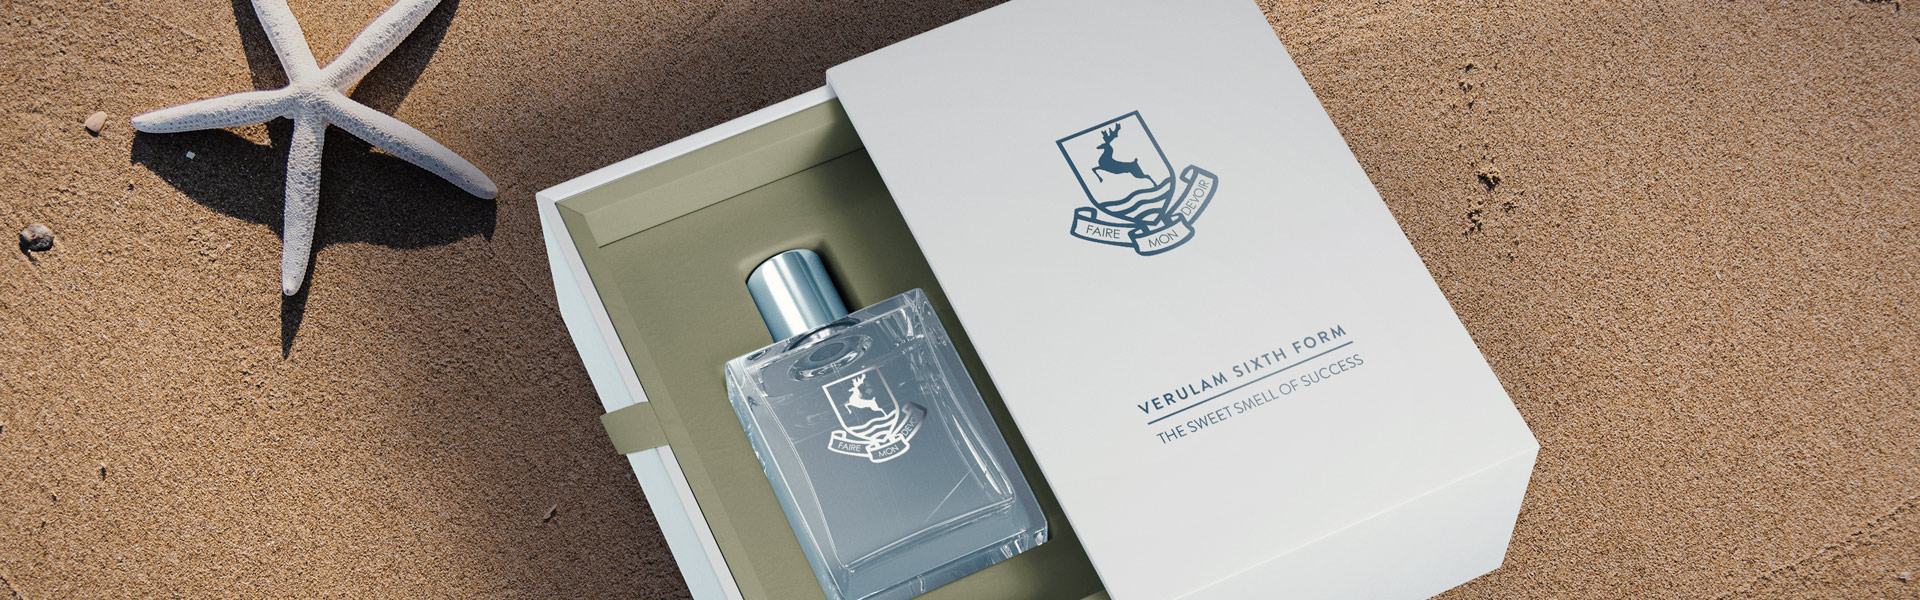 mockup of perfume bottle in smart packaging with verulam branding